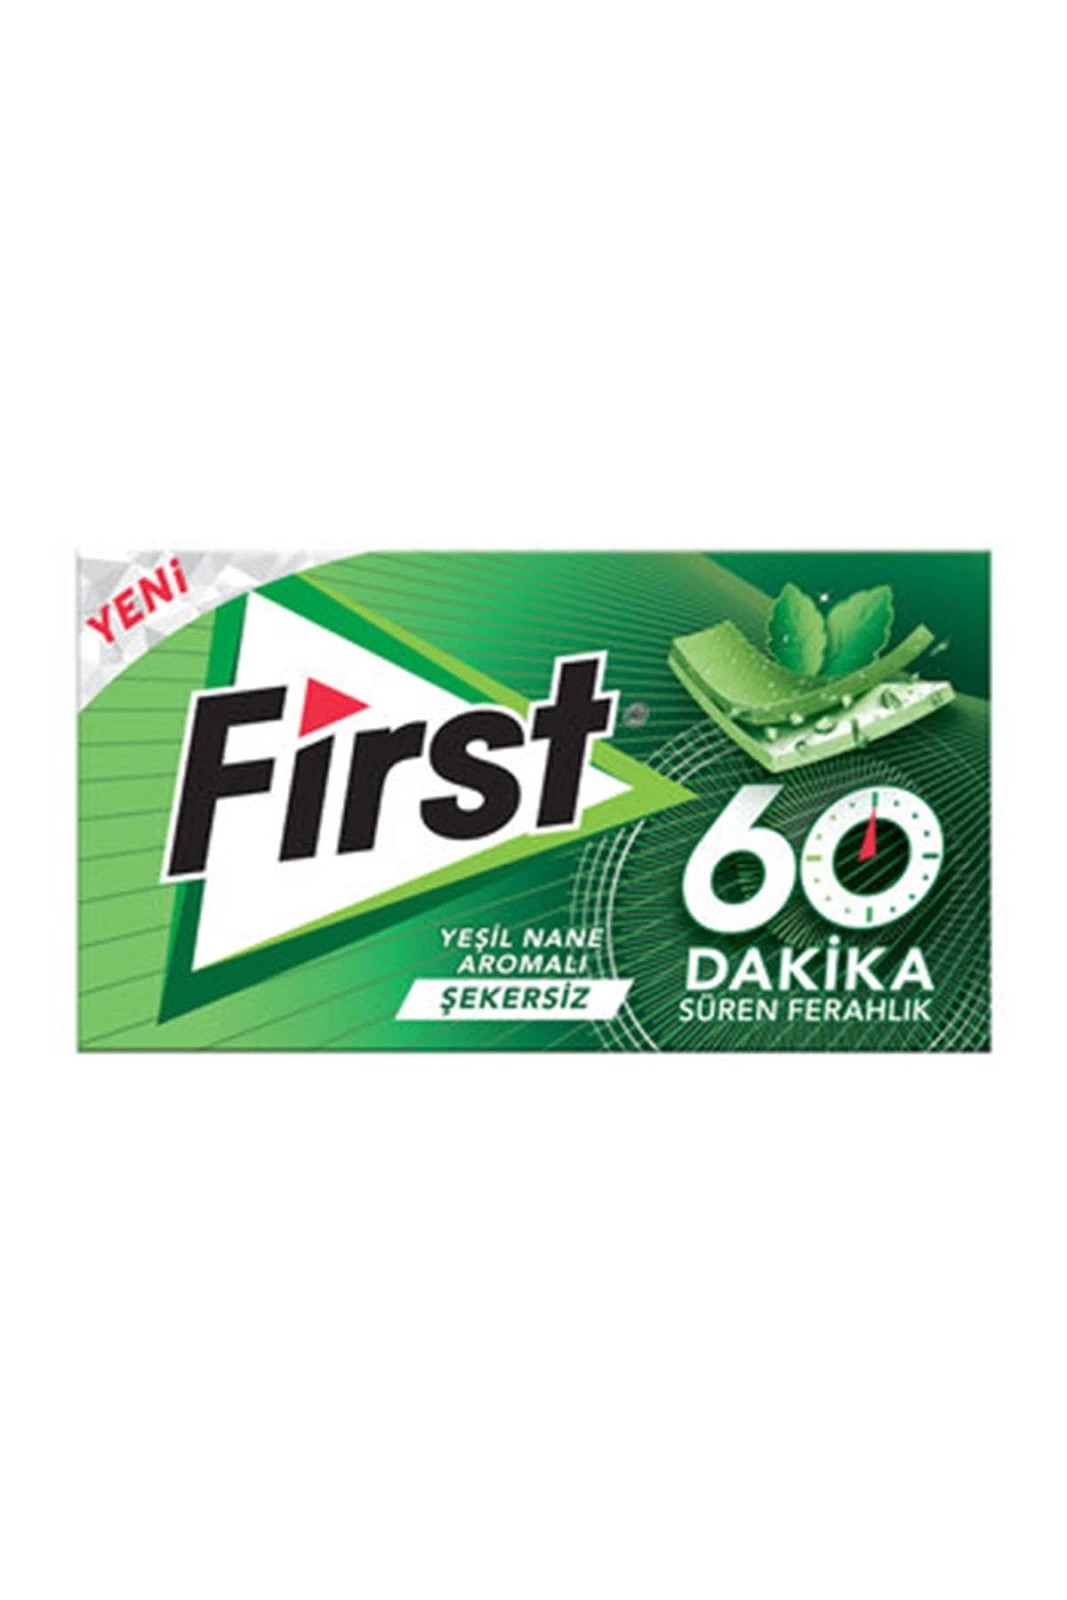 First 60 Dakika Yeşil Nane Şkrsz